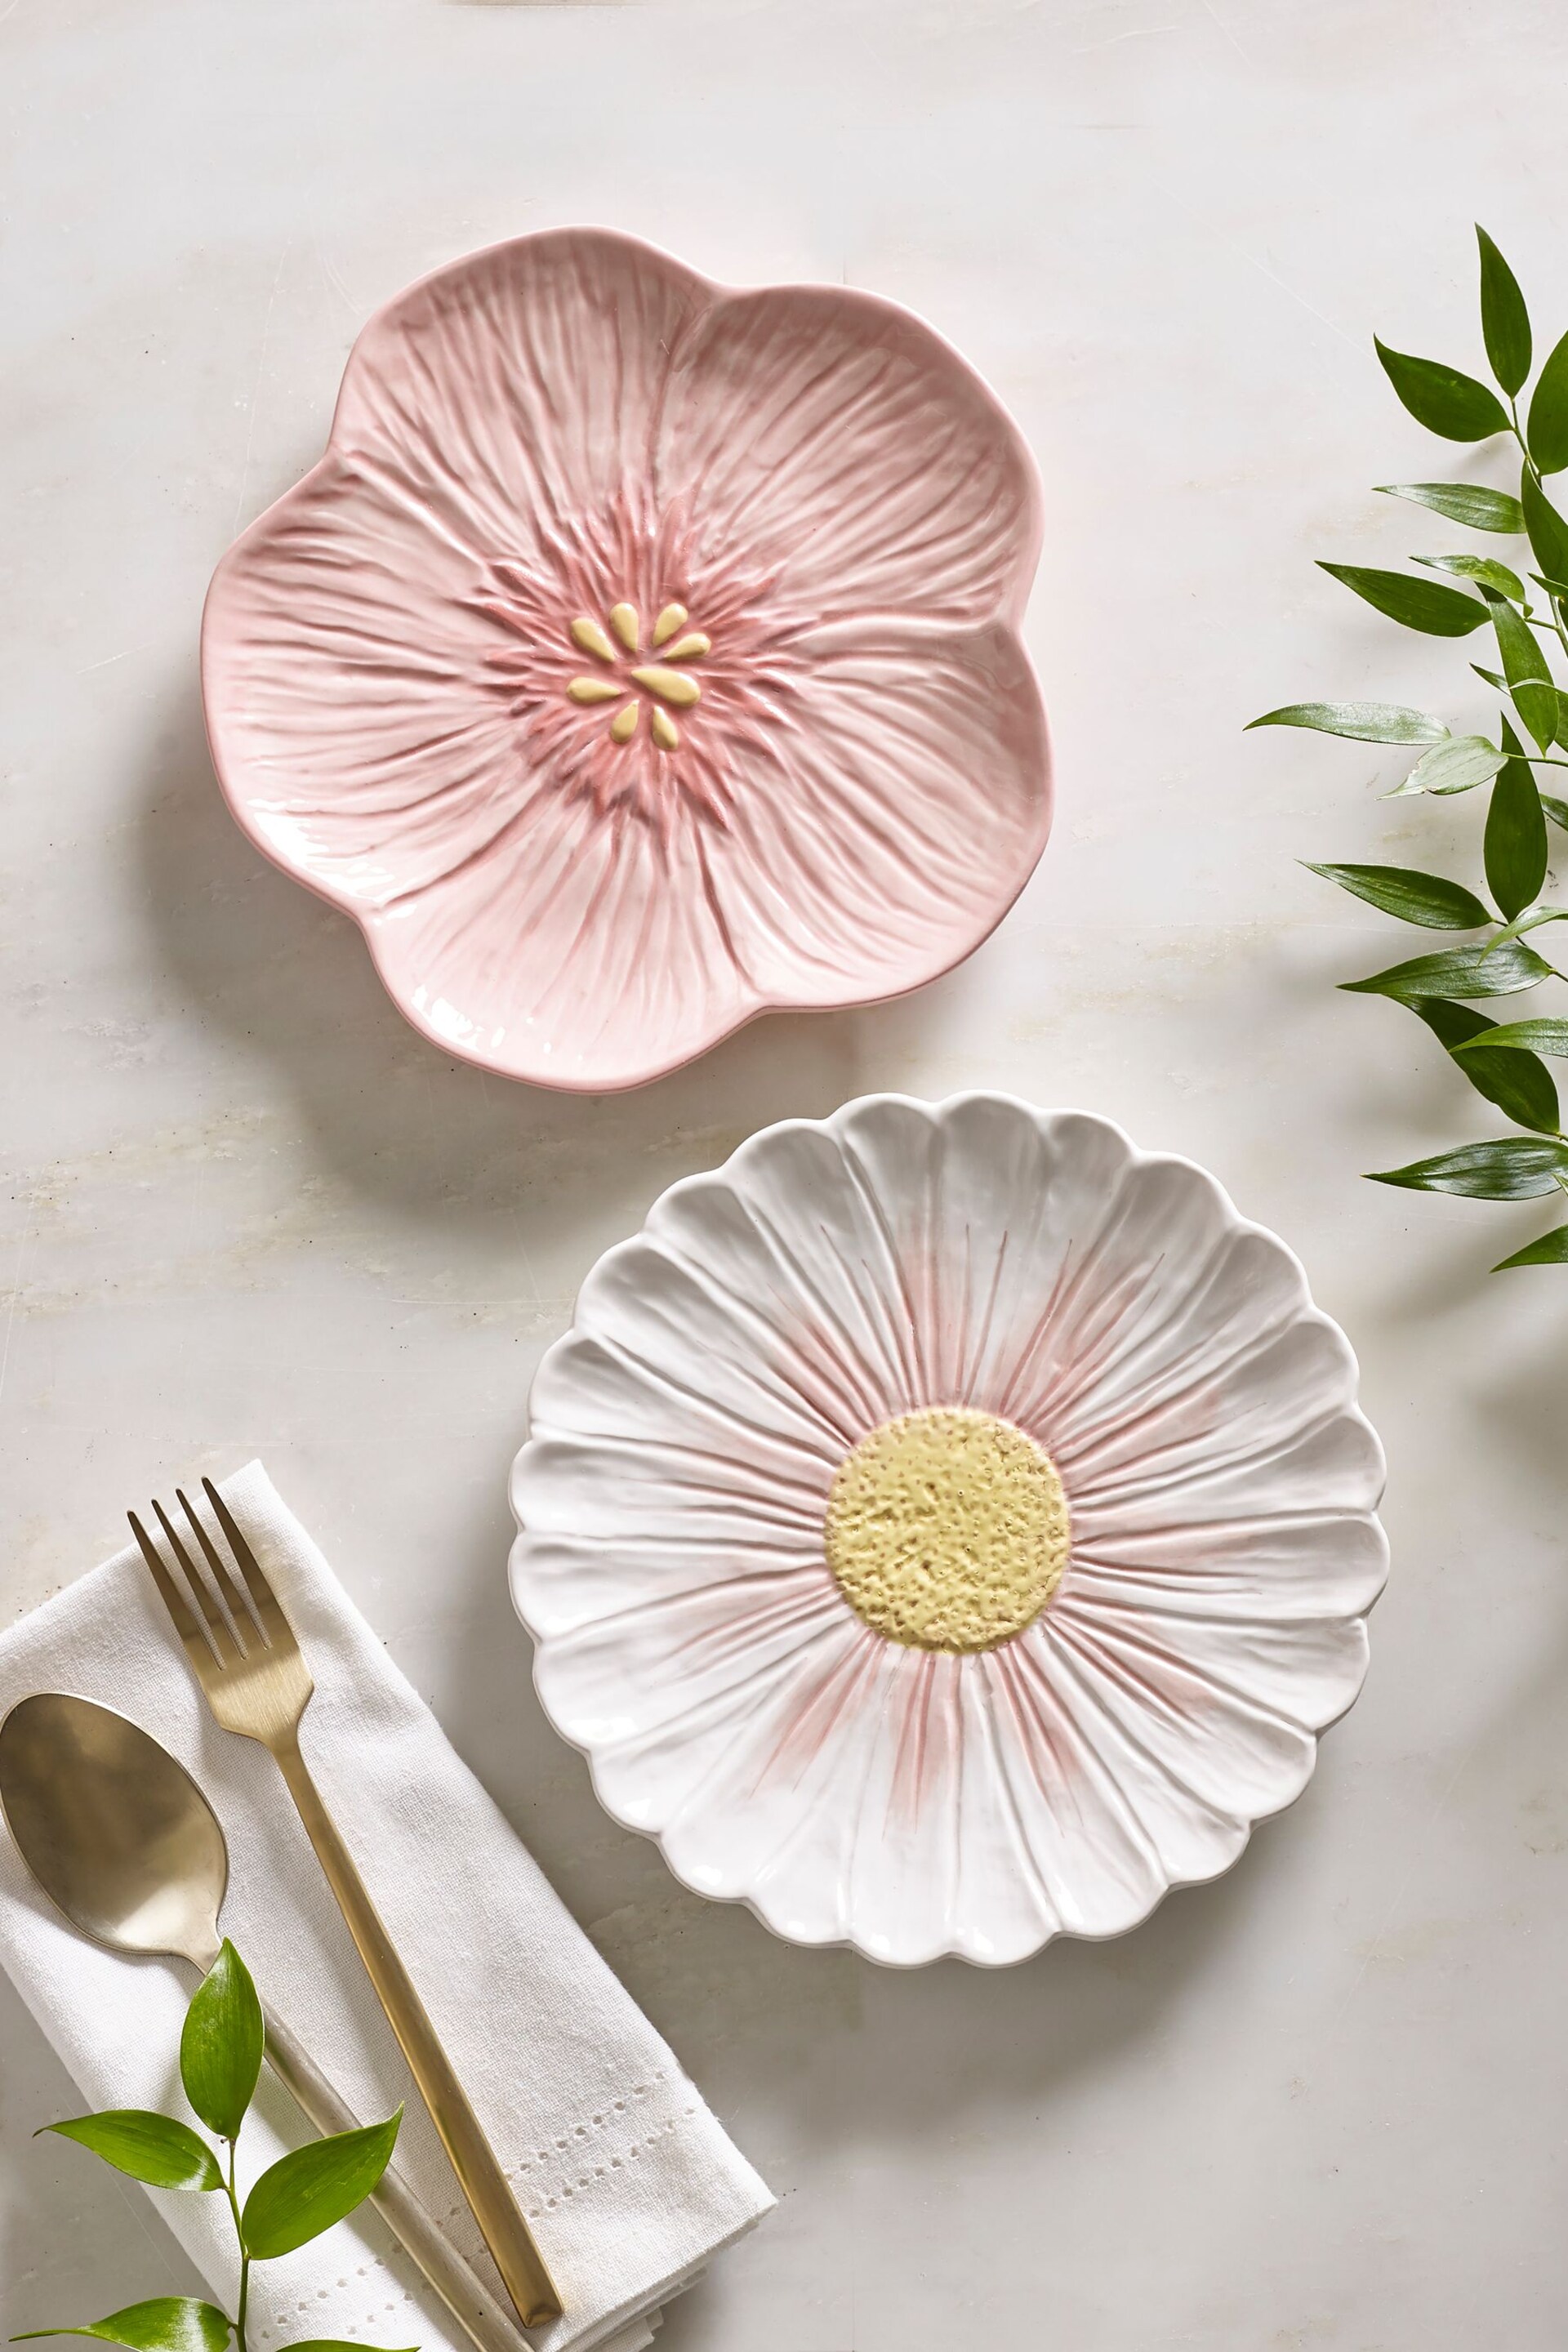 Set of 2 Pink Flower Side Plates - Image 1 of 3